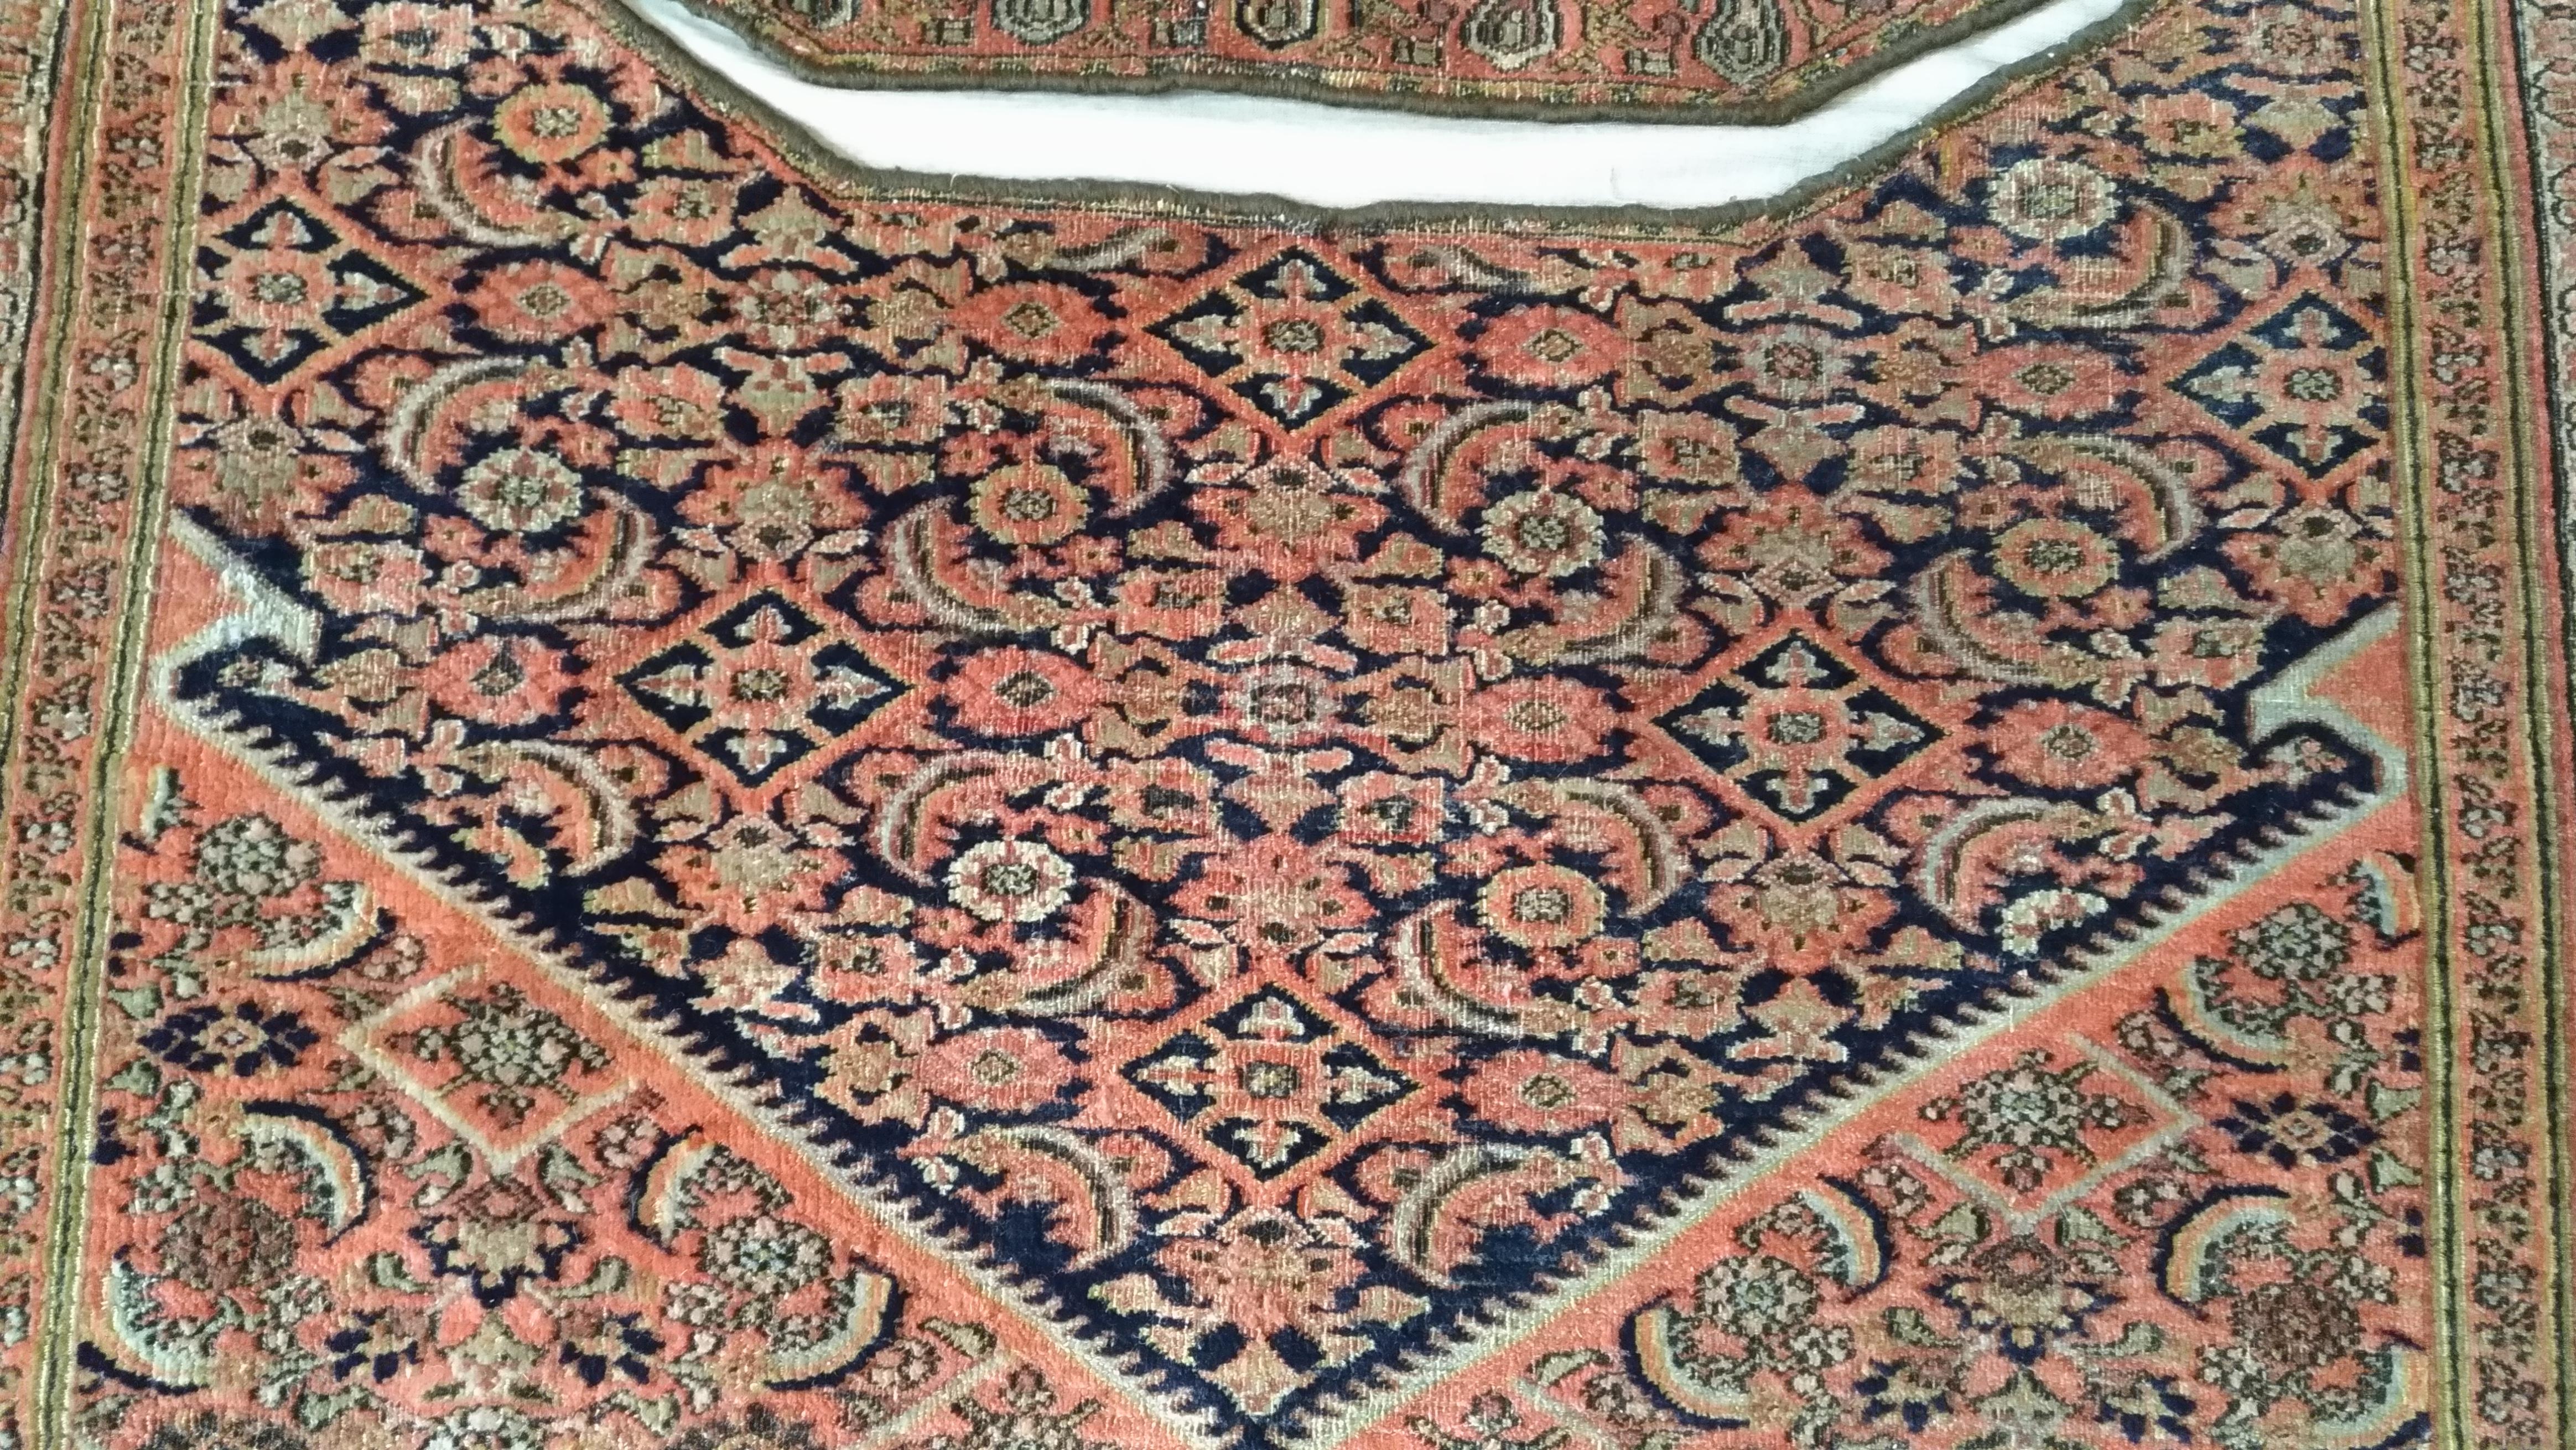 214 - 19th century horse saddle rug.